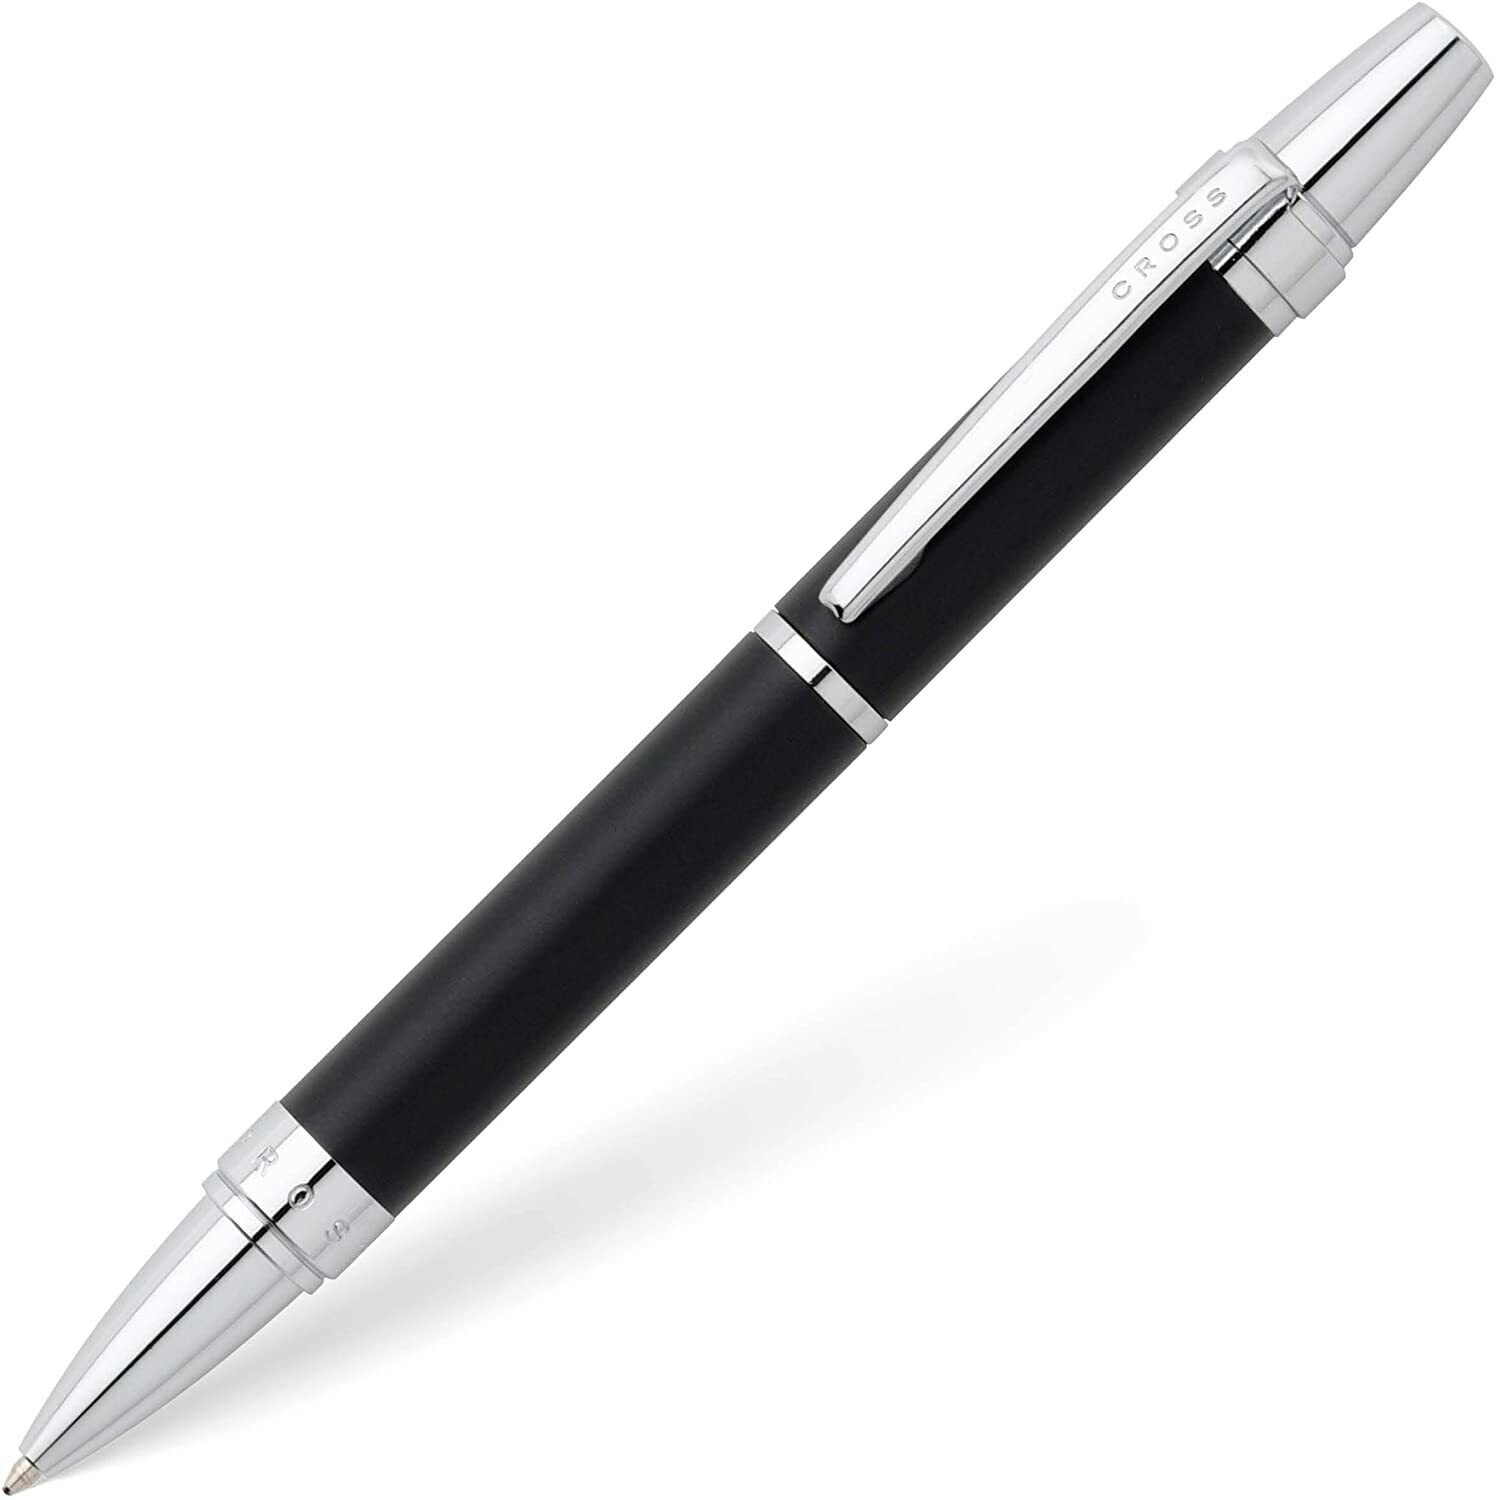 Cross Nile Ballpoint Pen, Matte Black & Chrome, Brand New